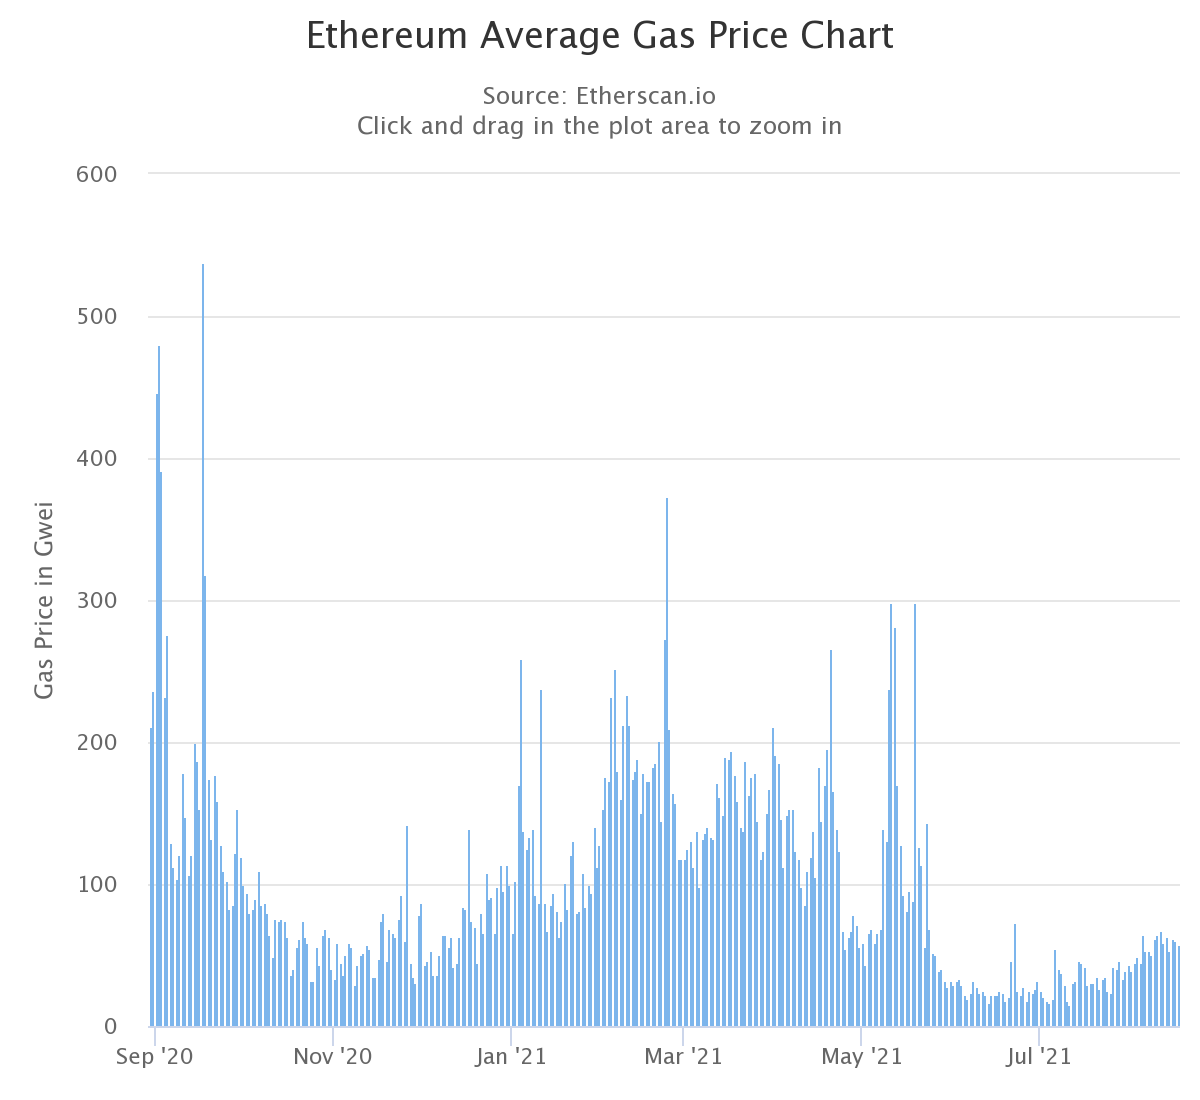 Average Ethereum gas prices